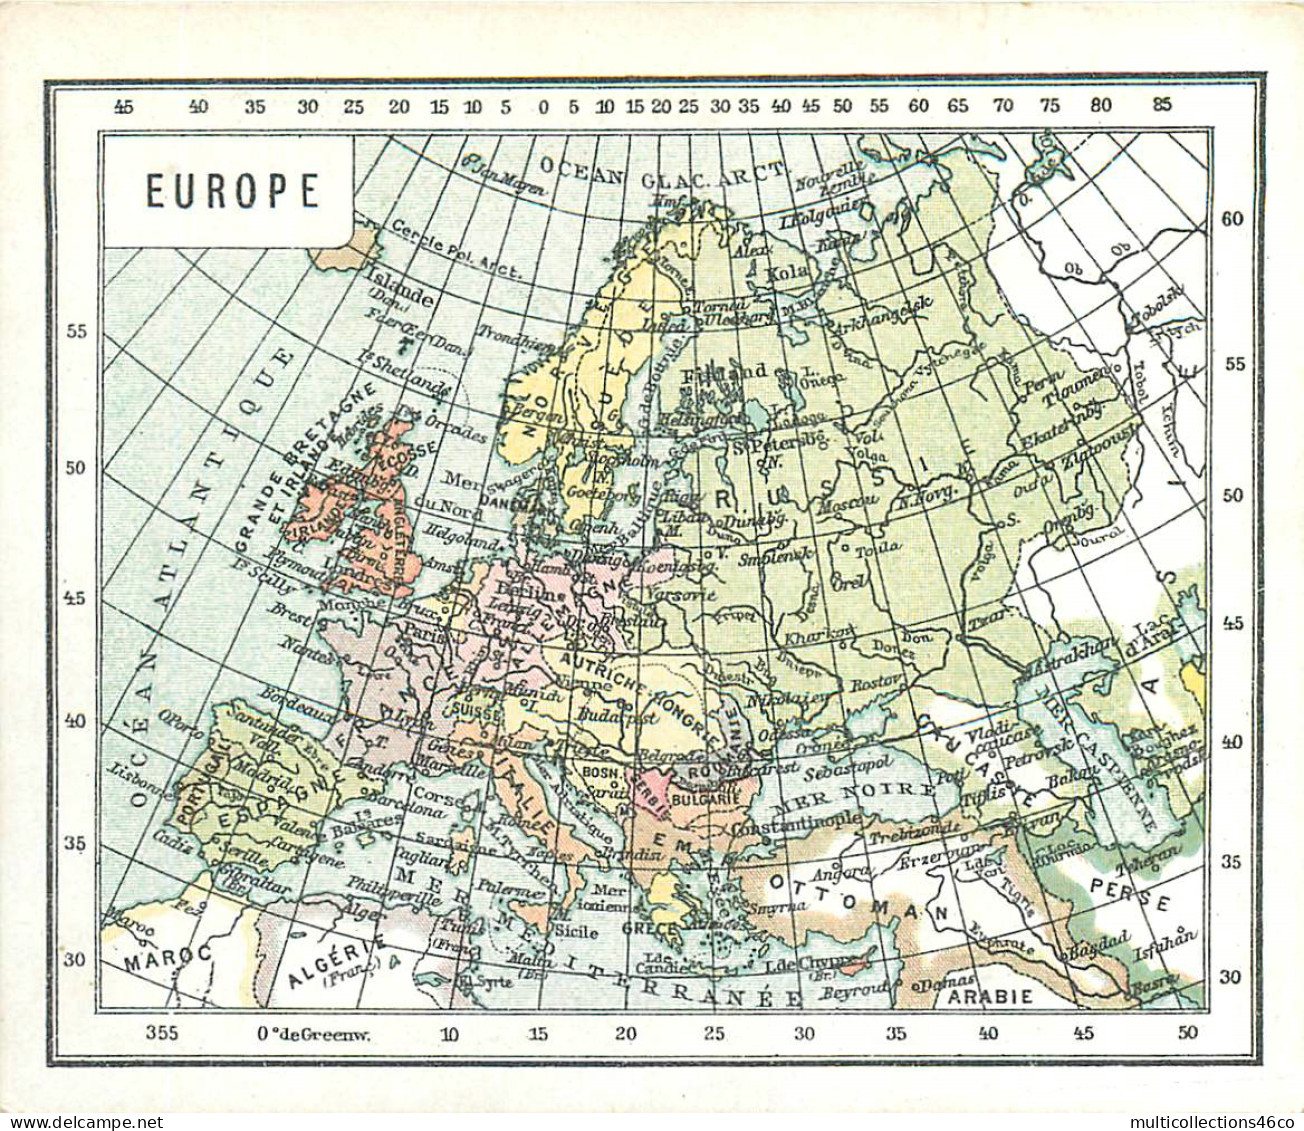 040523 - CHROMO CACAO VAN HOUTEN - Europe - Carte Géographique - Van Houten